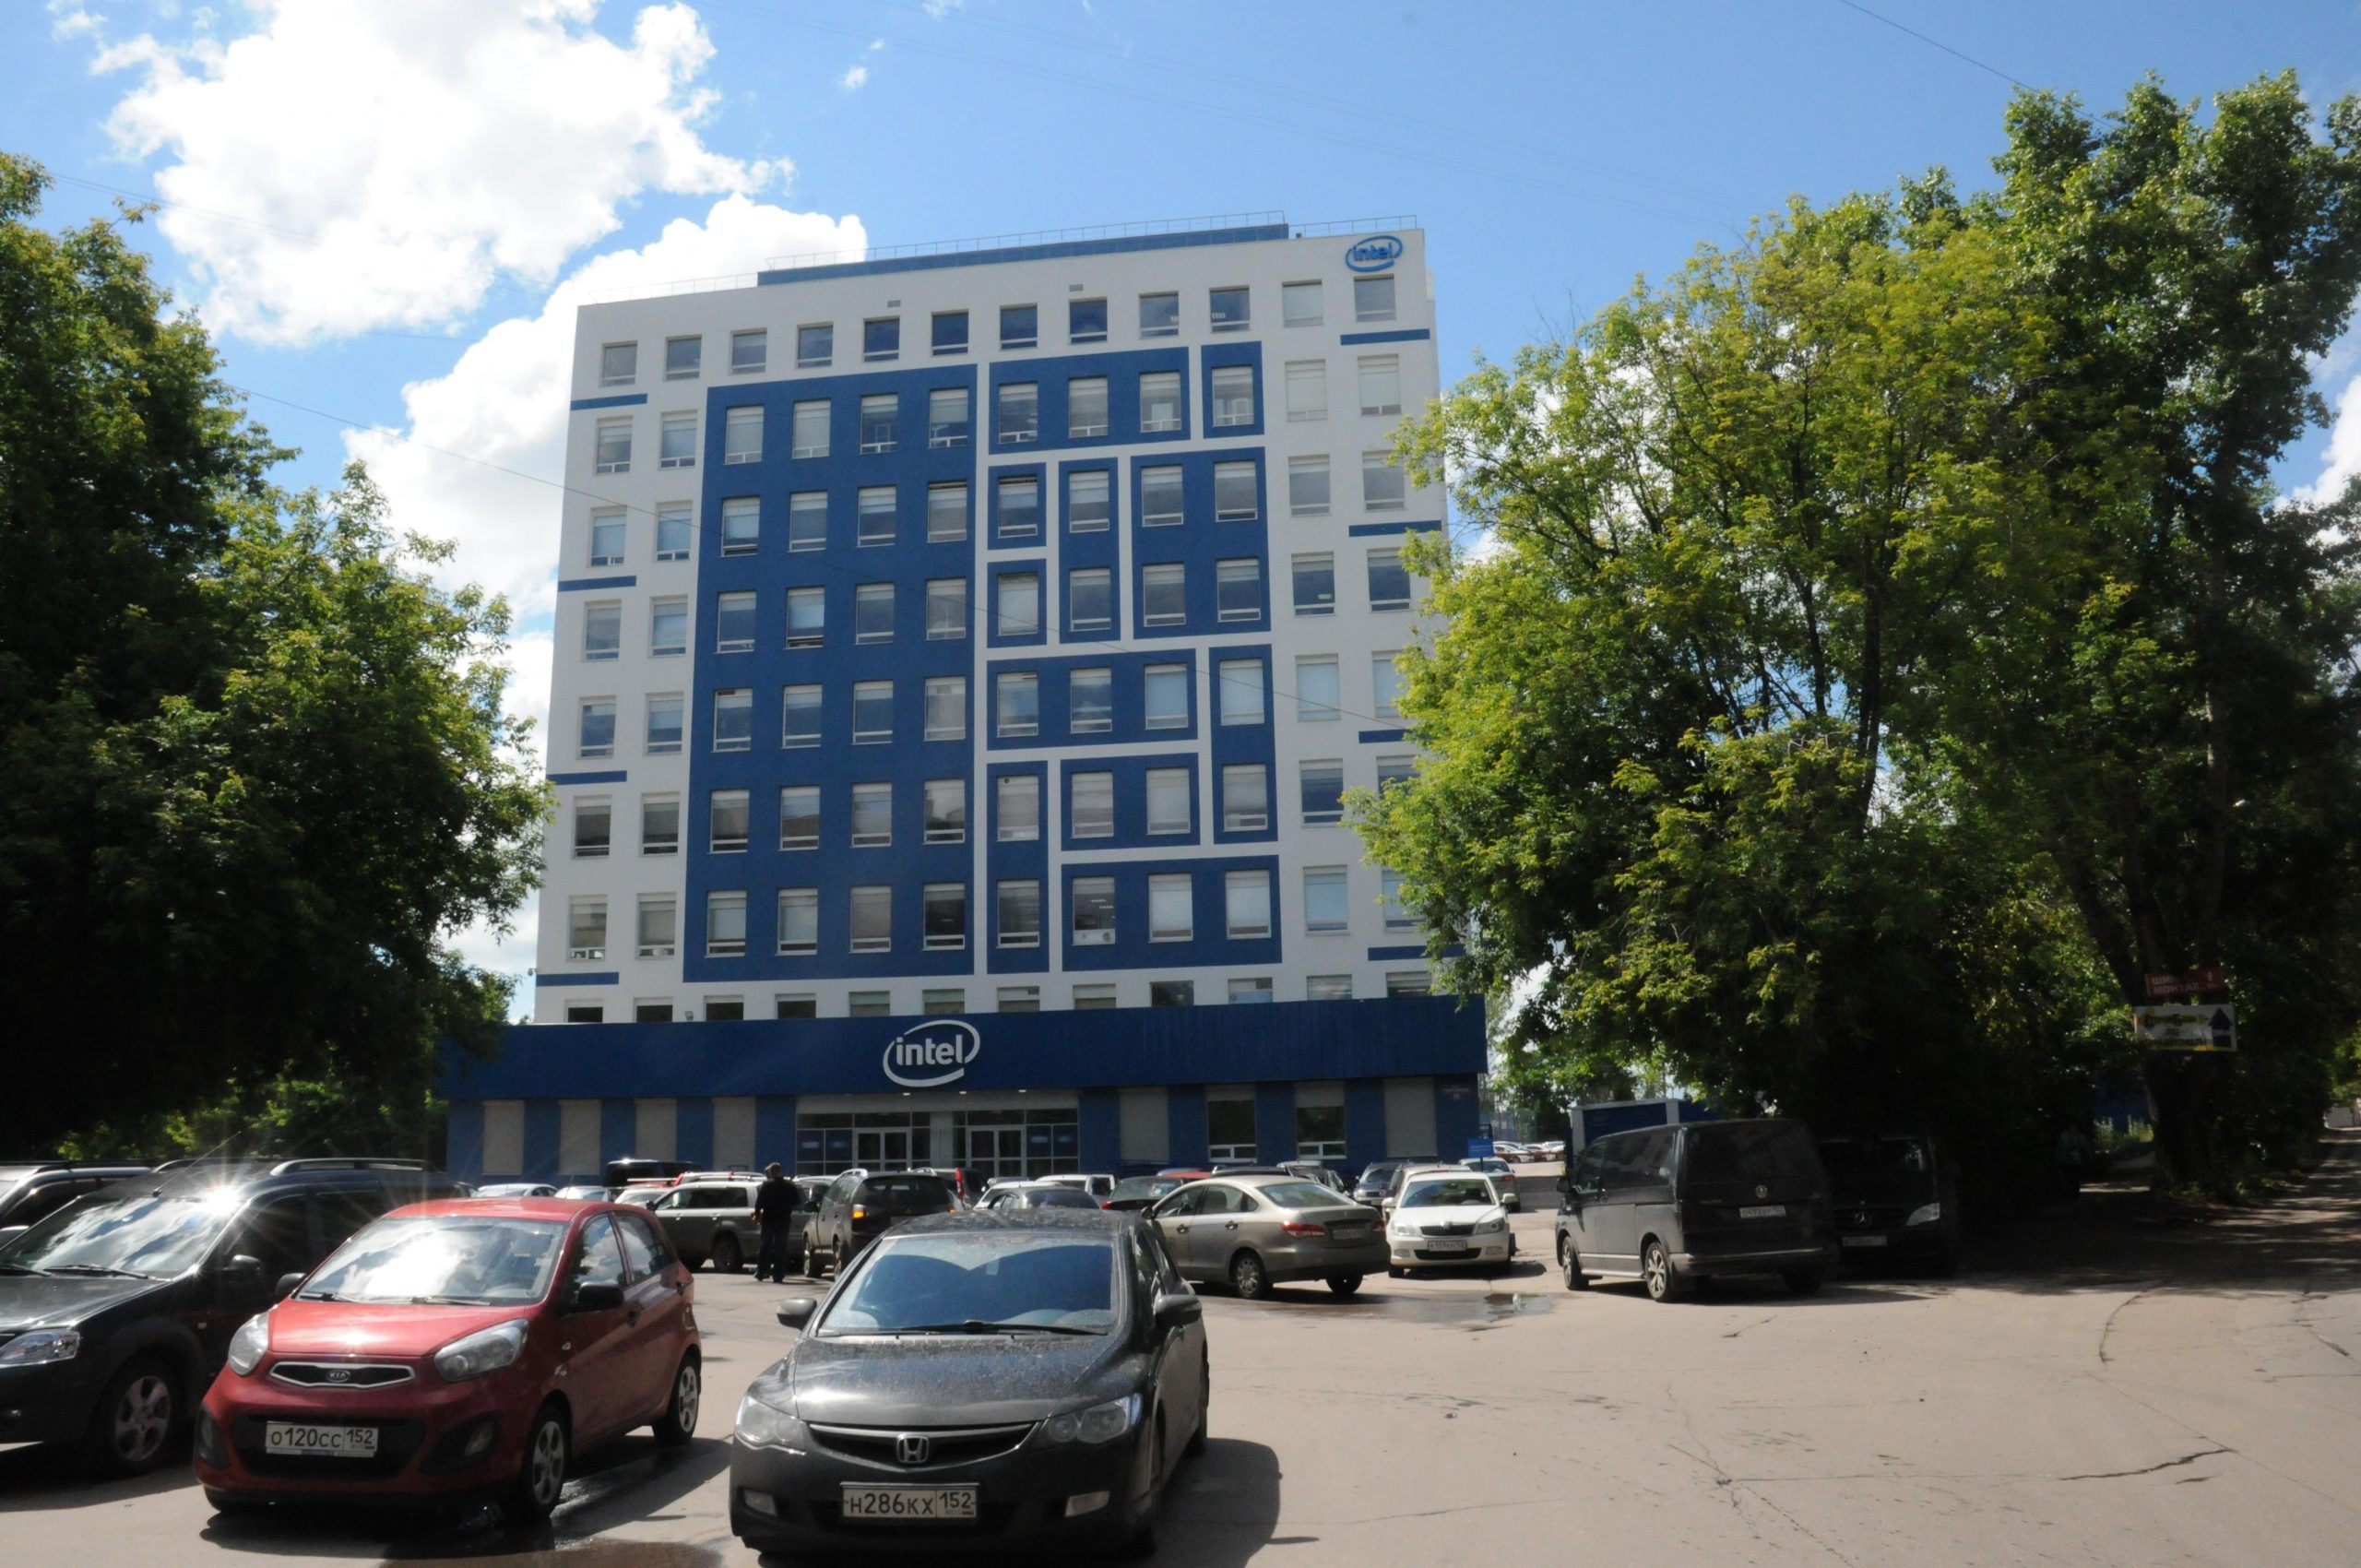 Кабинет интел. Офис Интел в Нижнем Новгороде. Здание Интел в Нижнем Новгороде. Центр Intel в Нижнем Новгороде. Офисы Интел в 1947 году.